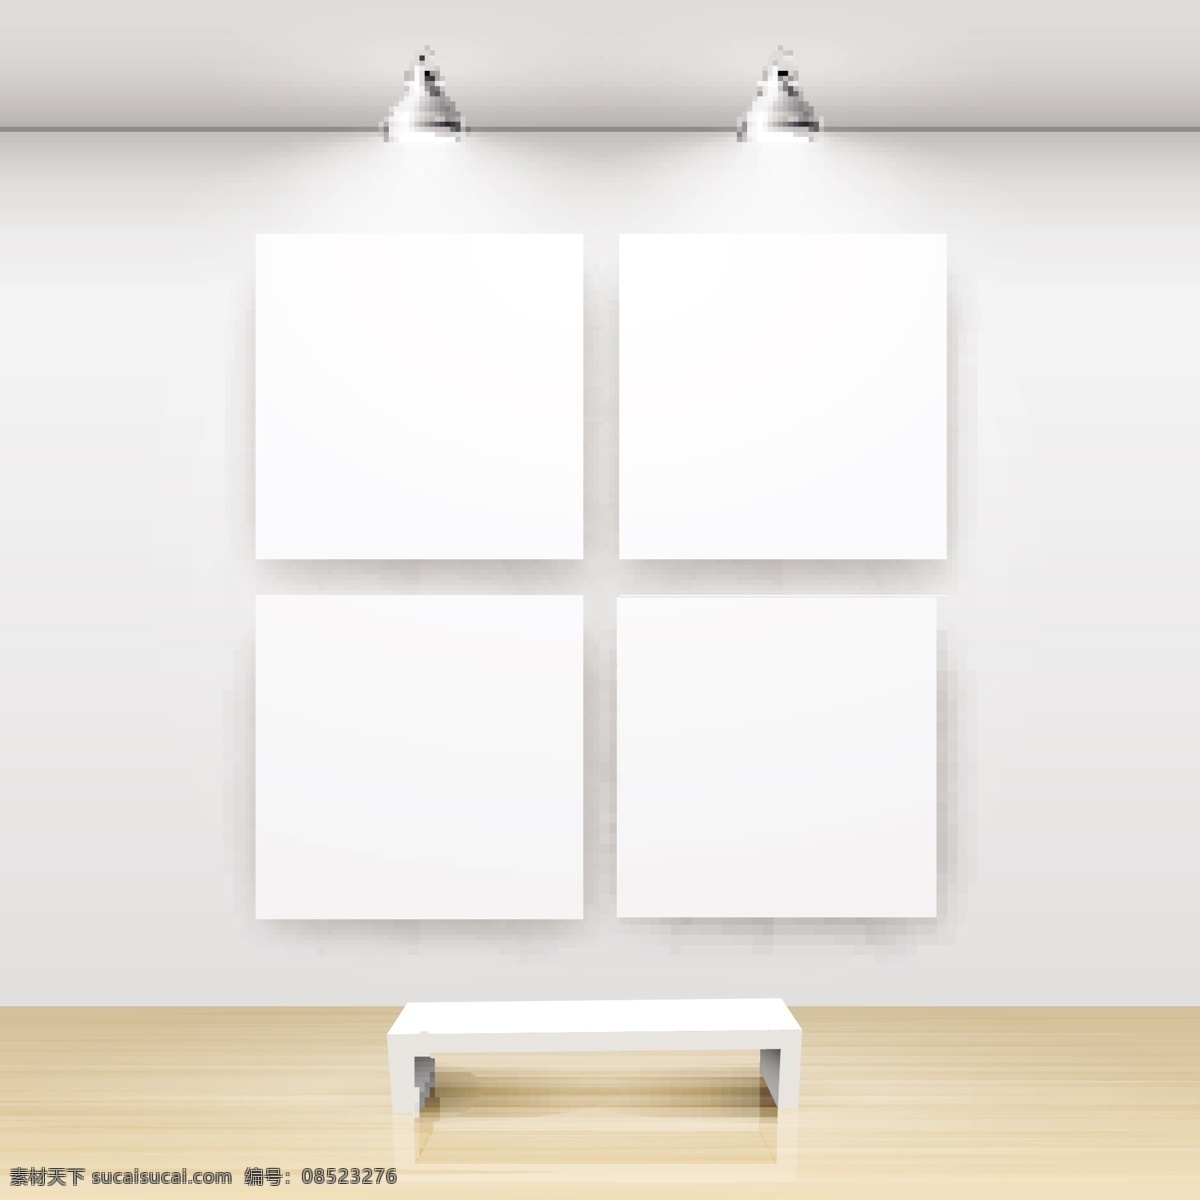 展览馆 模板 矢量 展览 画廊 画廊模板 向量 艺术 展览馆的模板 白色